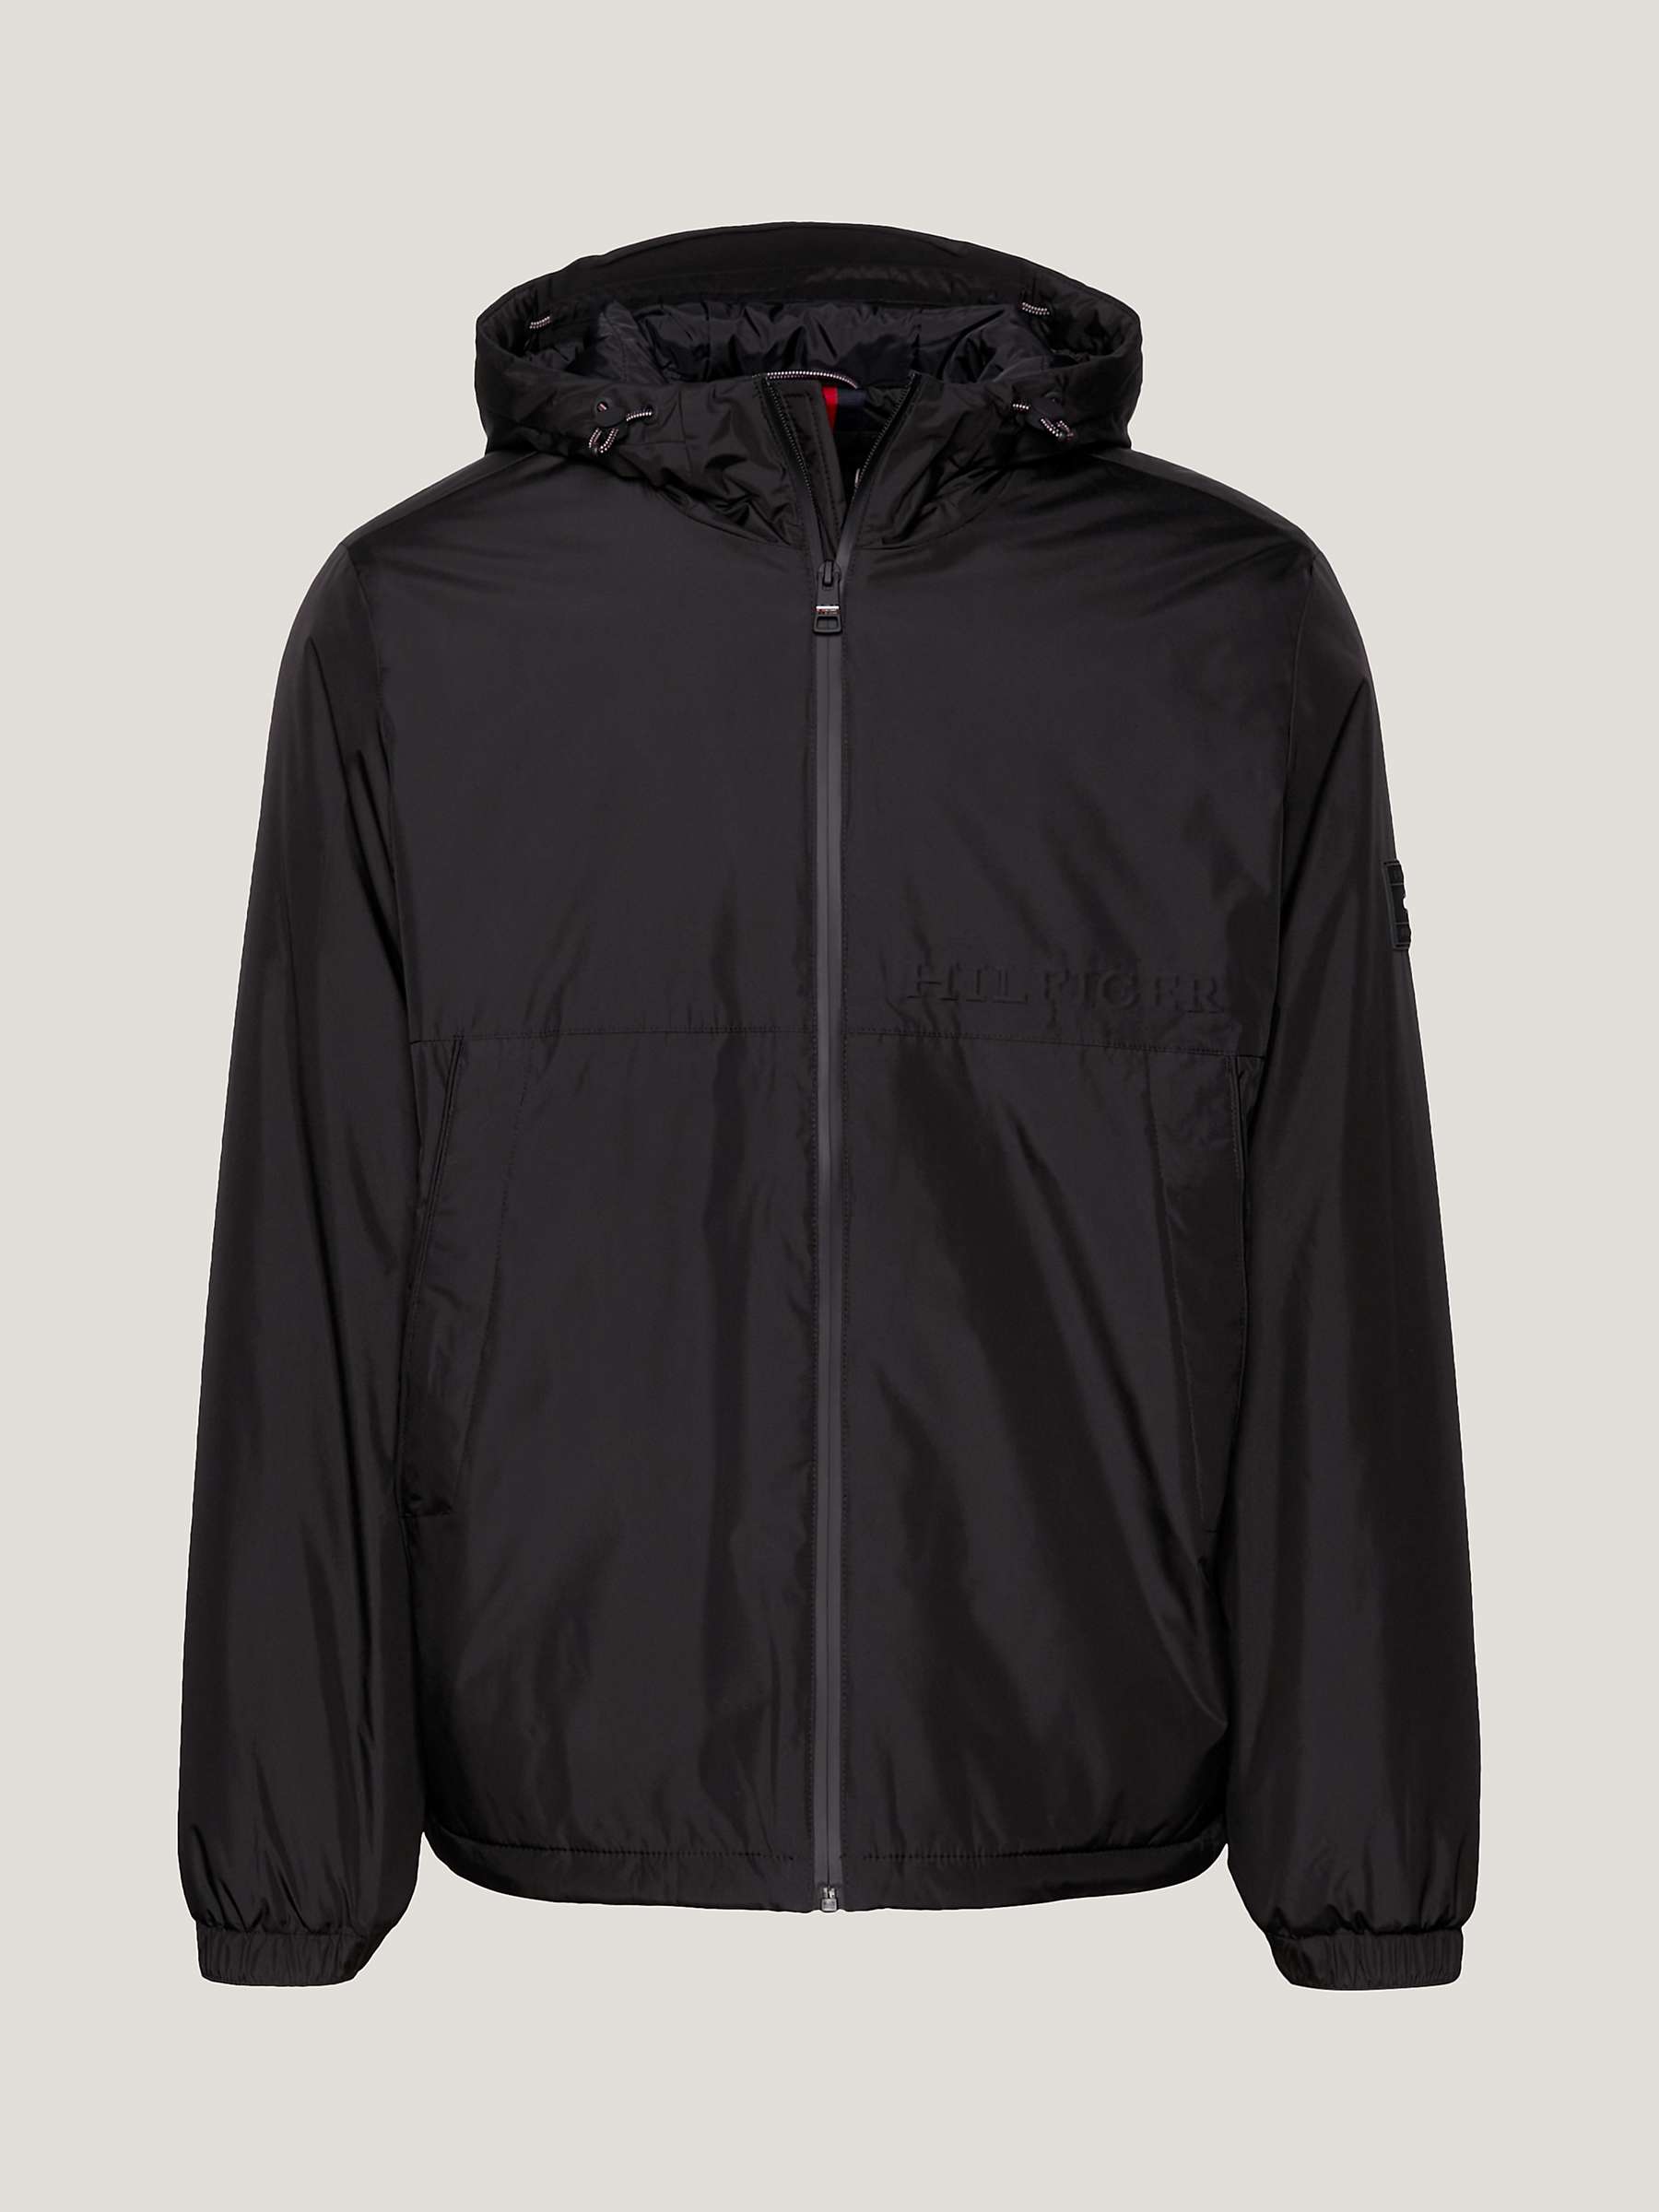 Buy Tommy Hilfiger Portland Hooded Jacket, Black Online at johnlewis.com